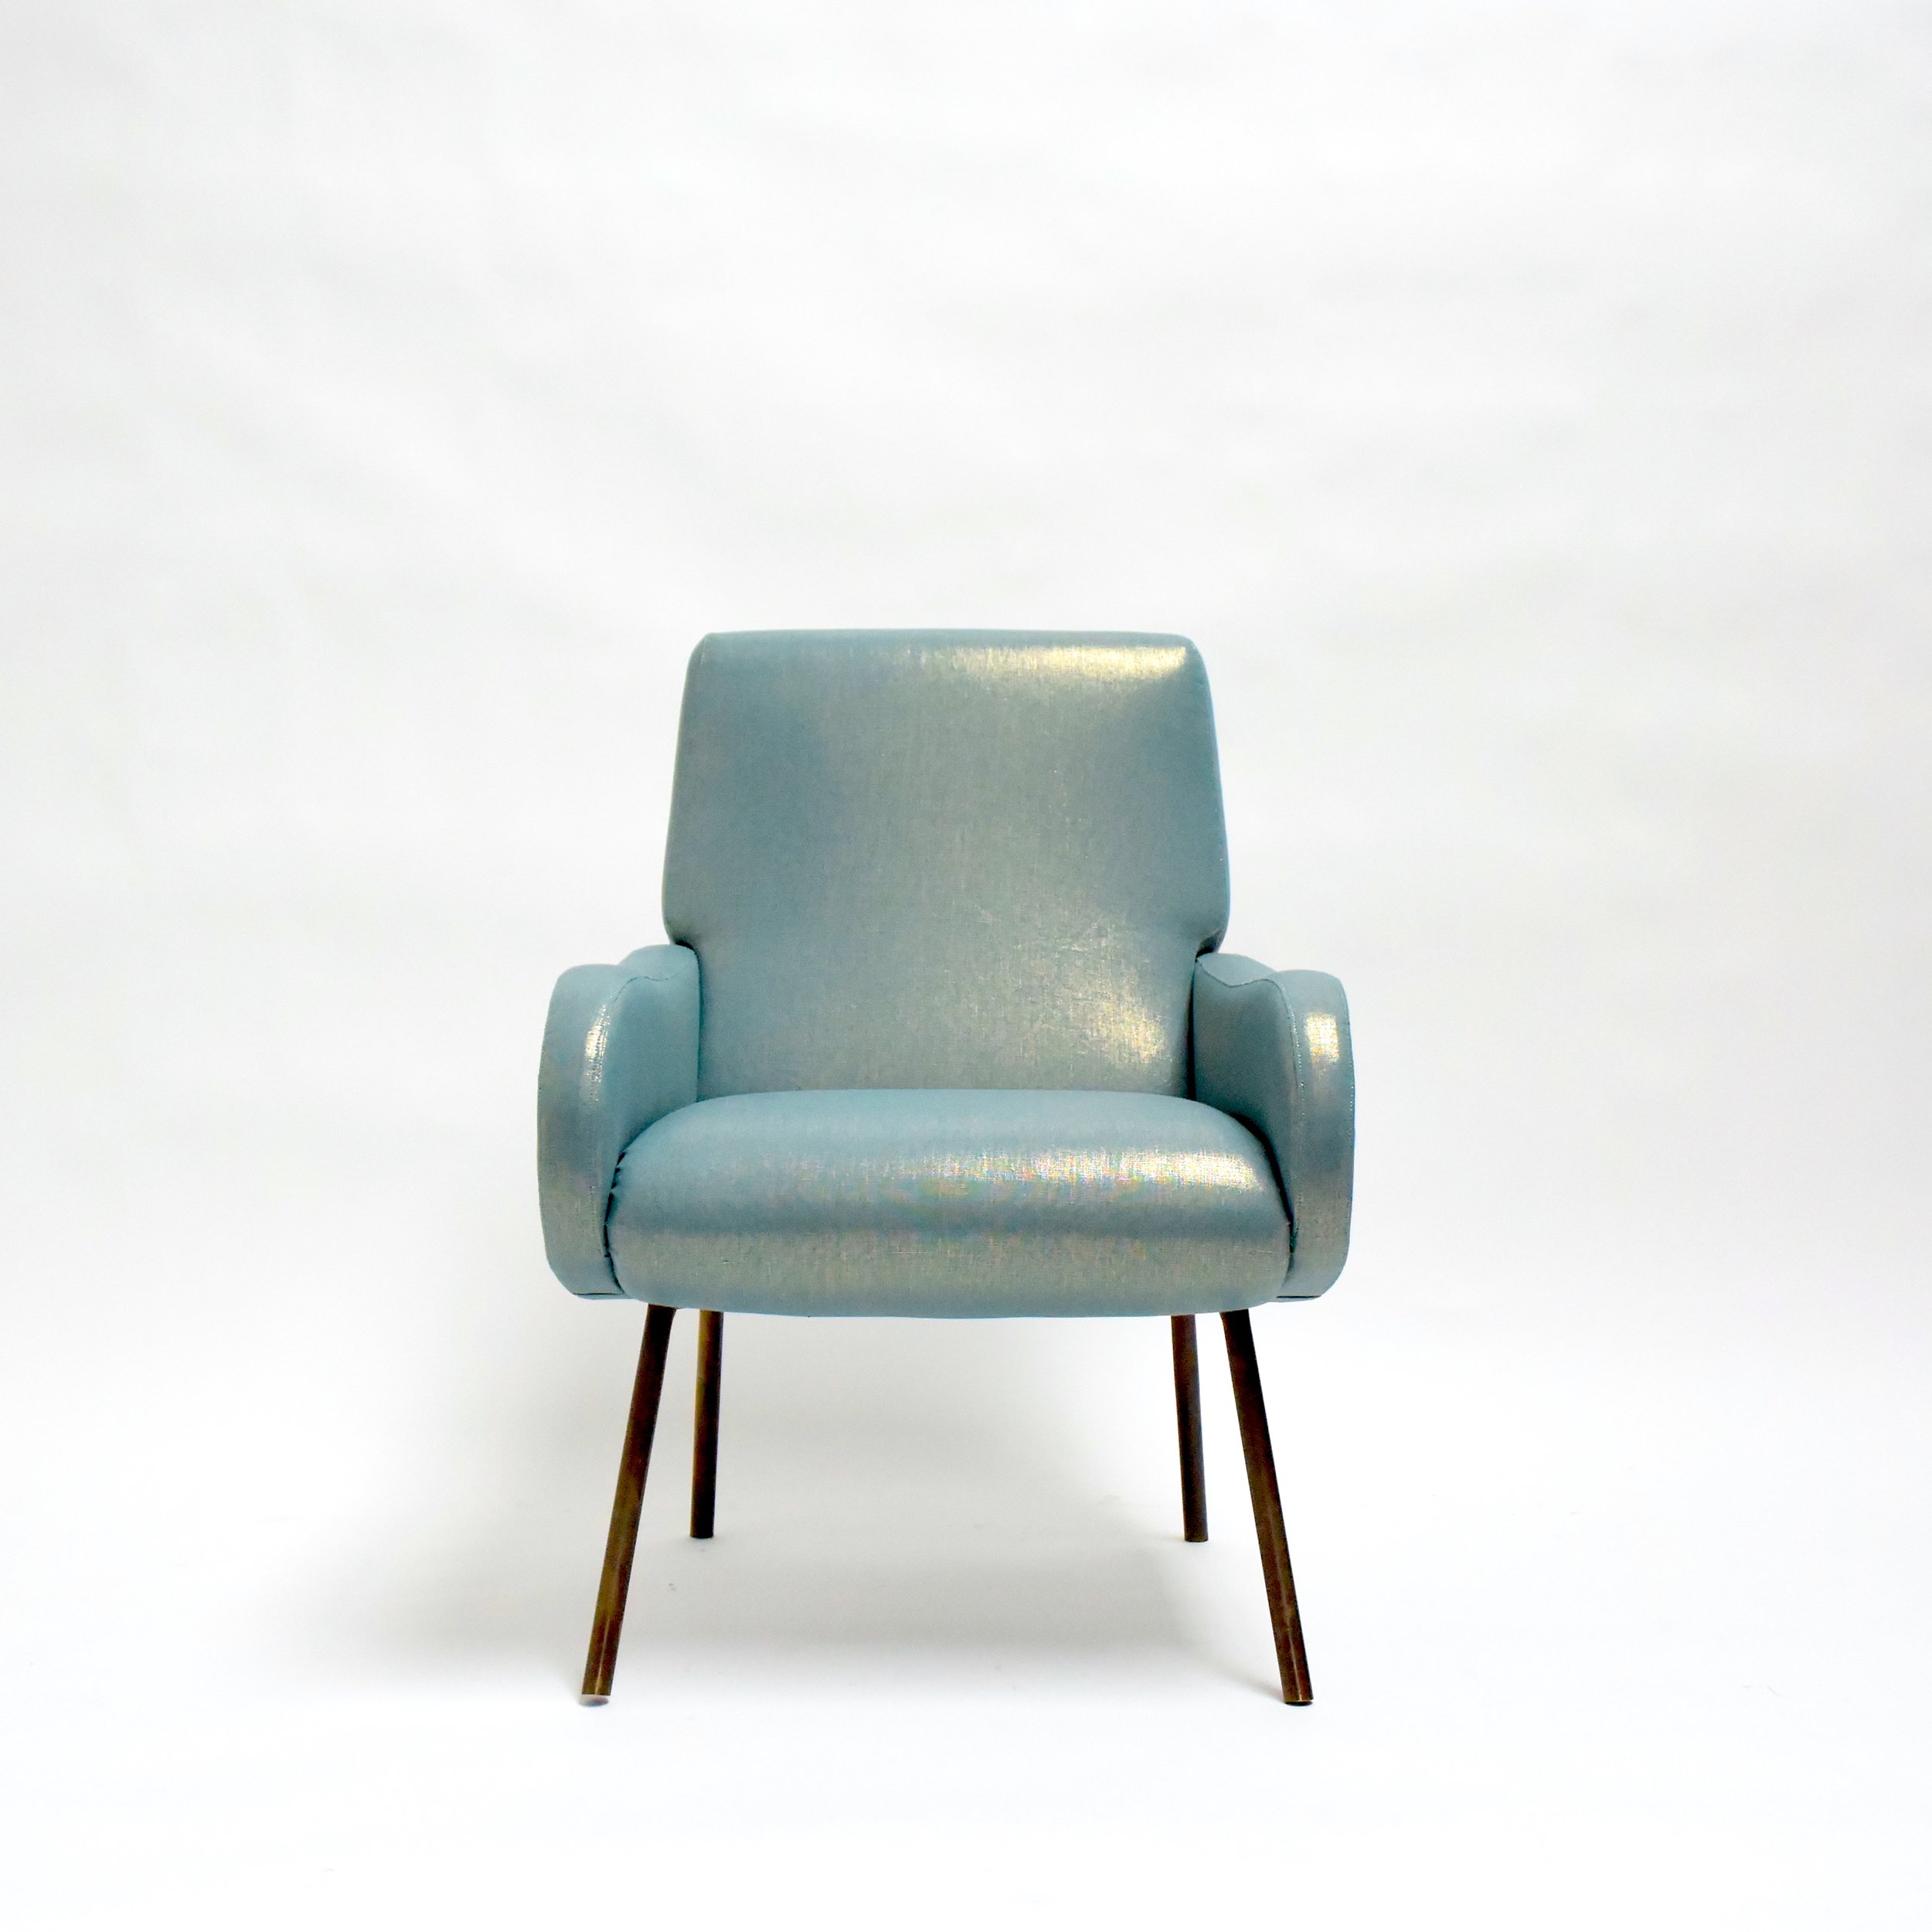 A-Blue-Chair-2.JPG